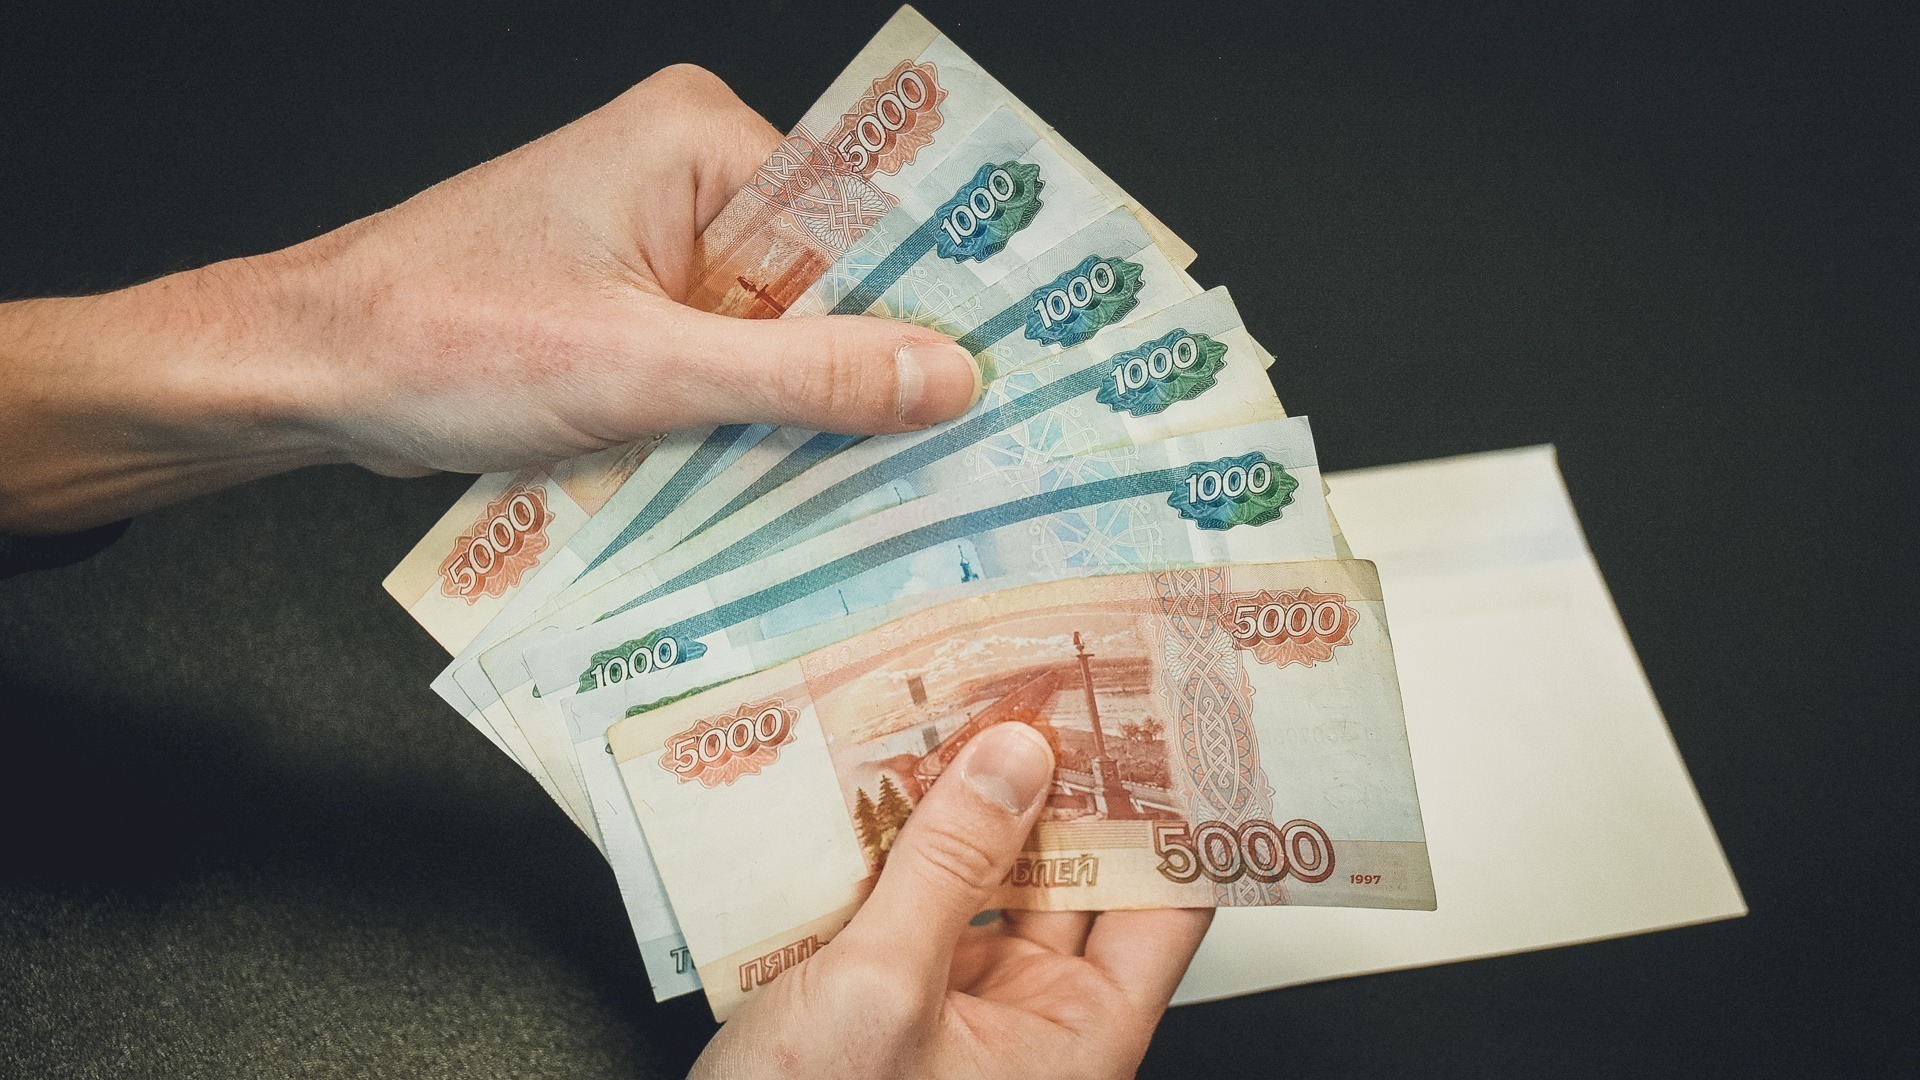 По словам губернатора, сейчас оренбуржцы стали получать около 50 тысяч рублей в месяц